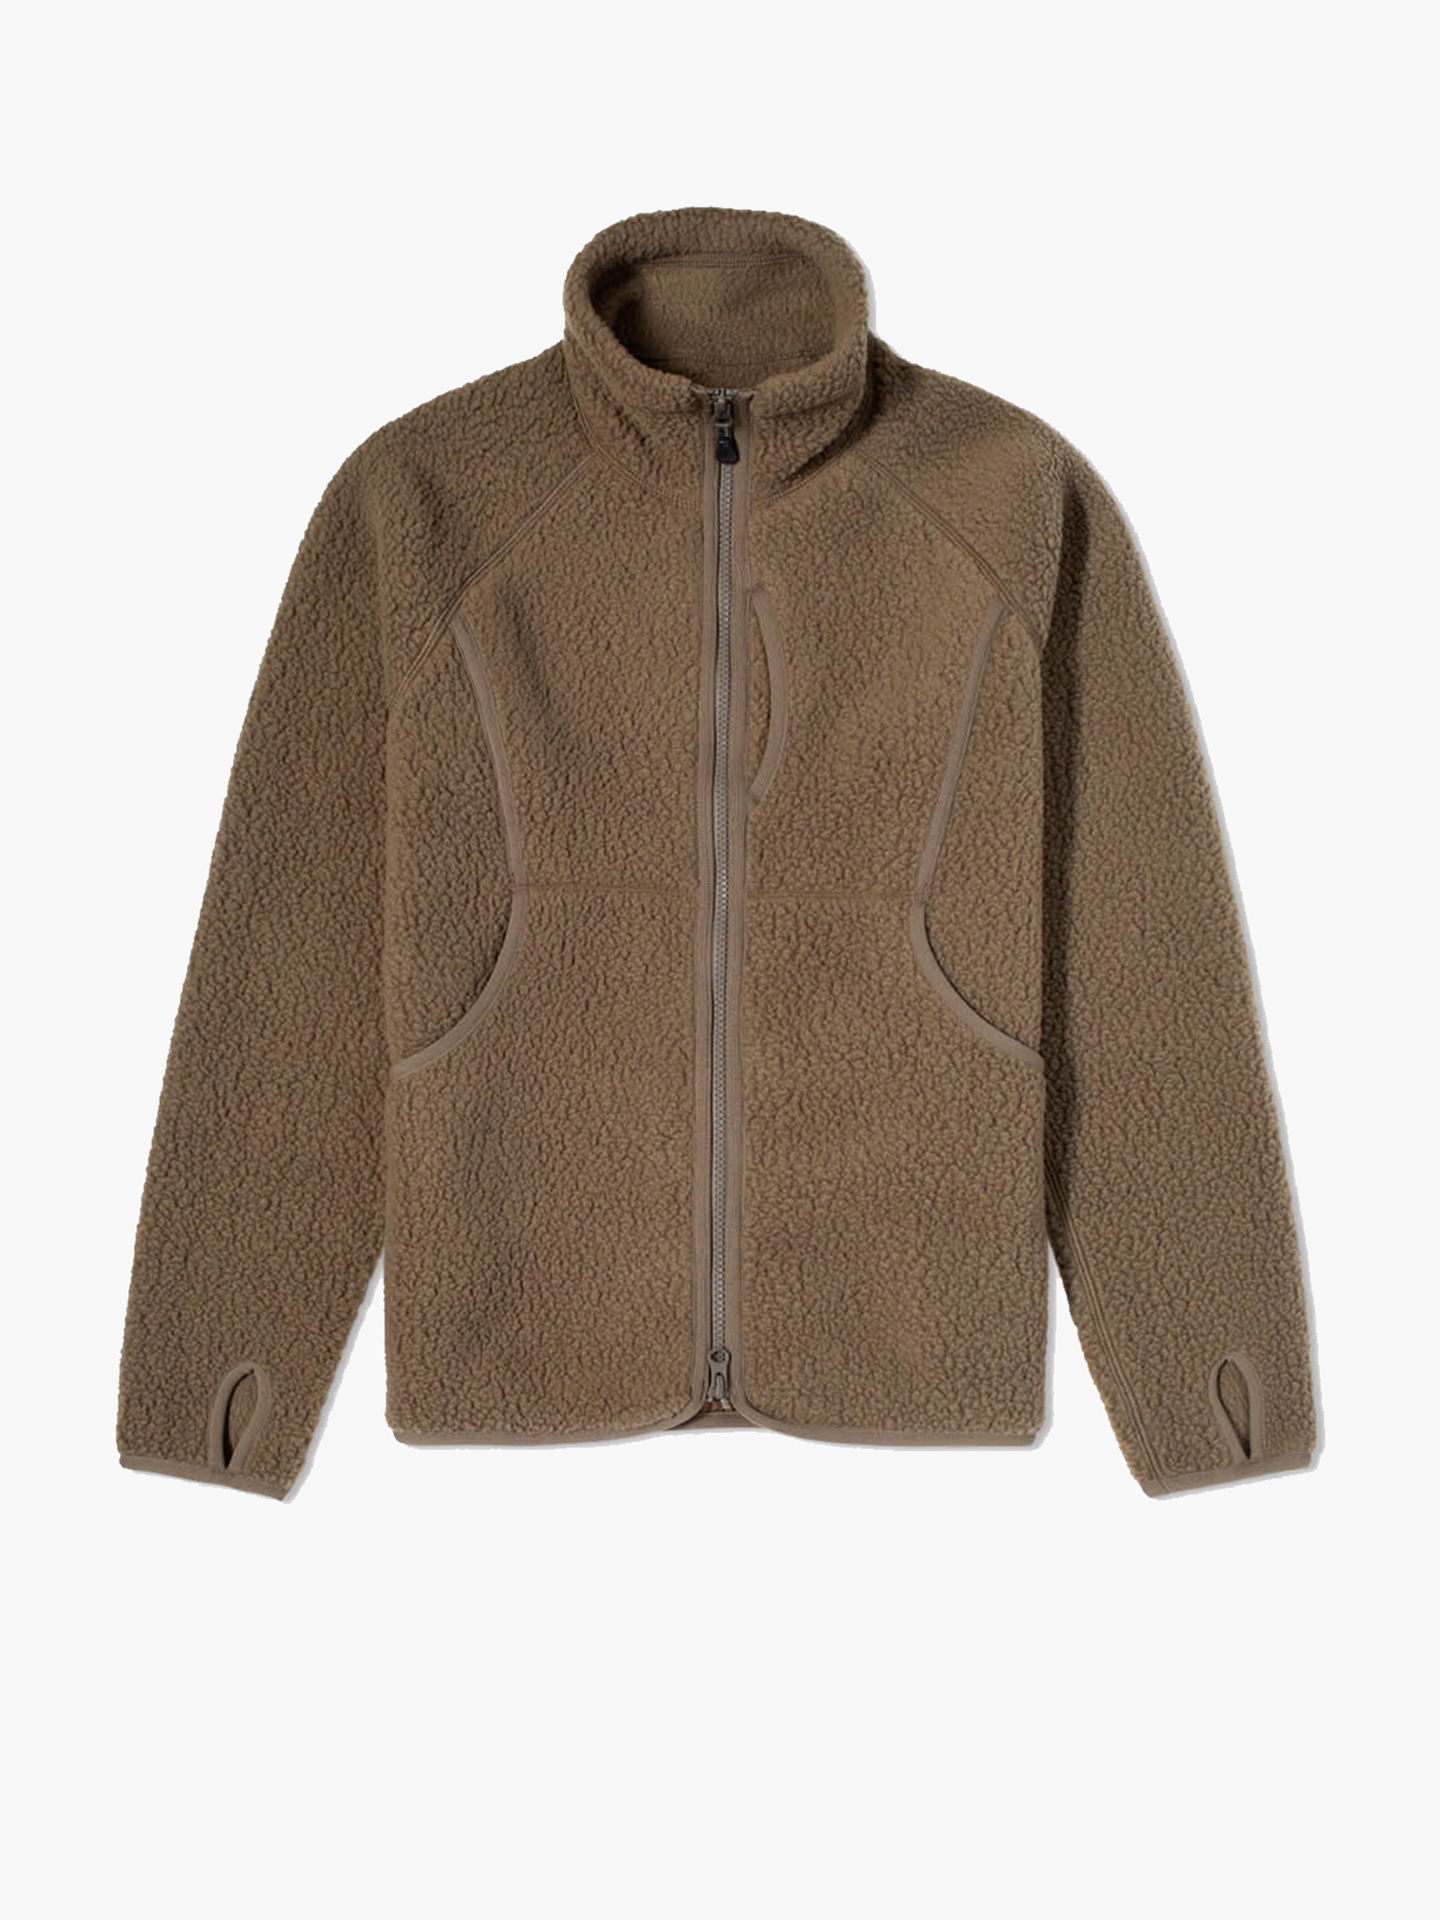 Thermal Boa Fleece Jacket Куртка, муж, размер XL, хаки